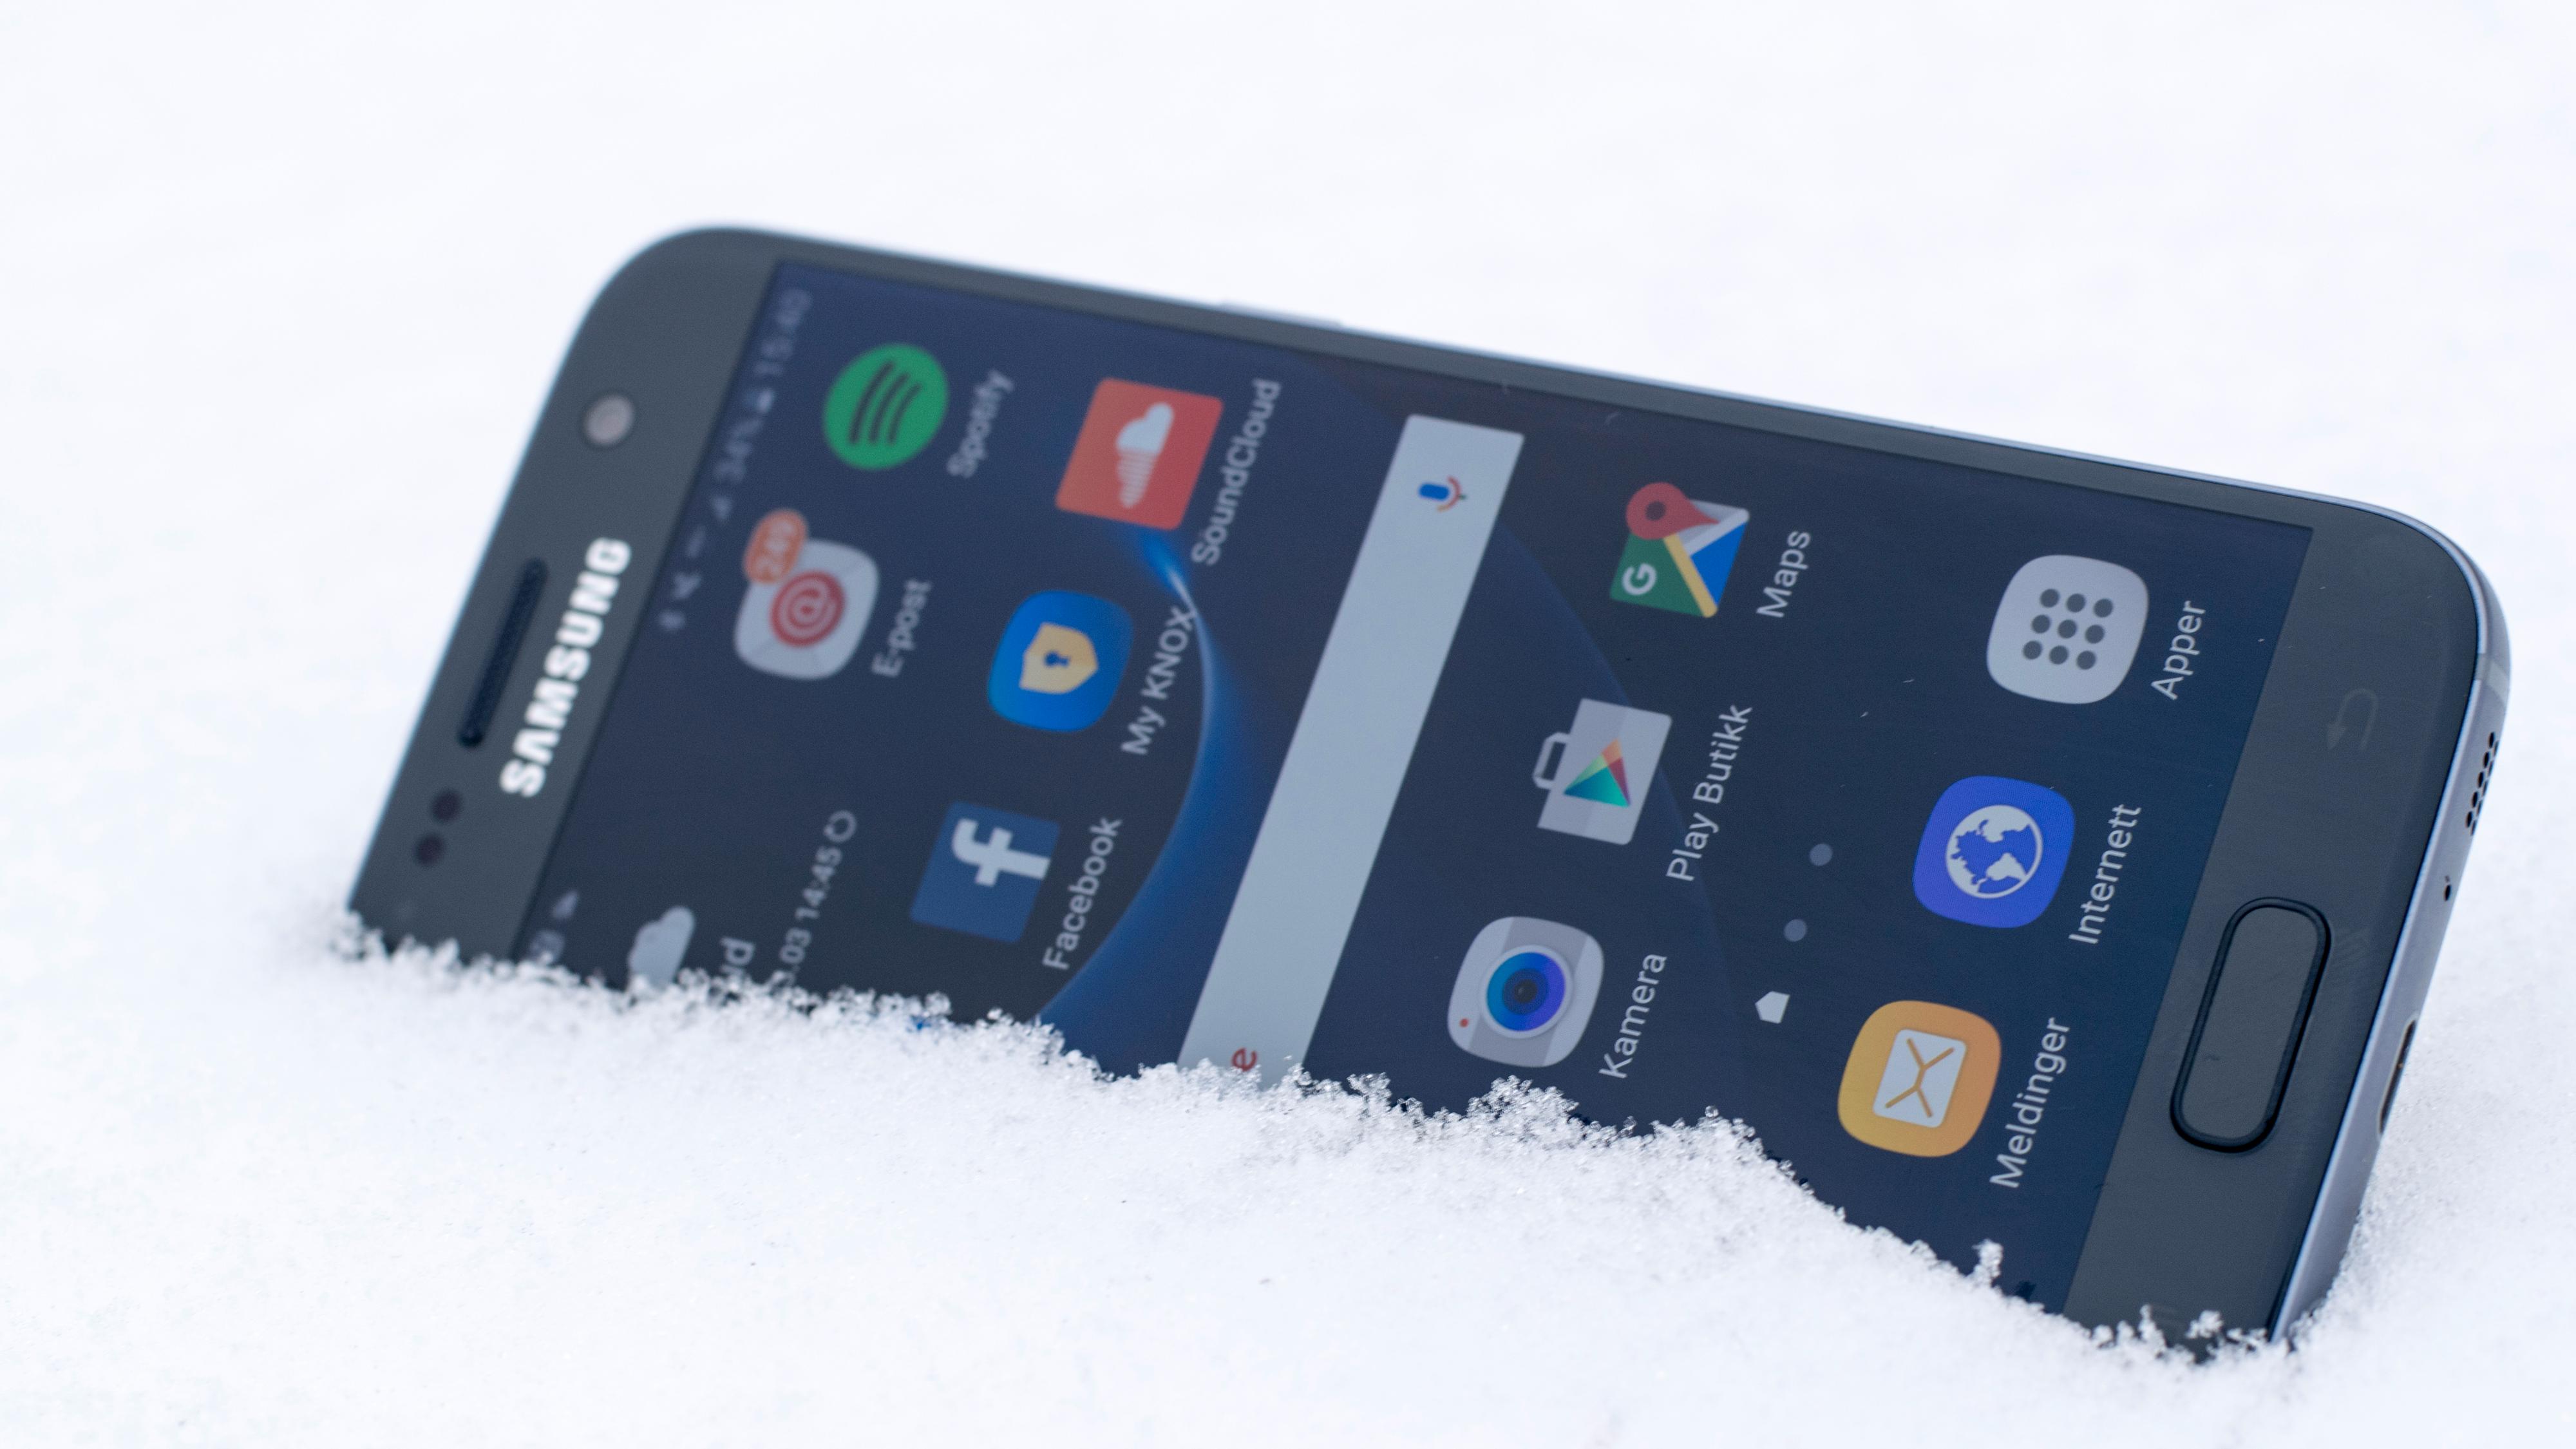 Galaxy S7-eiere må smøre seg med tålmodighet – Nougat-oppdateringen er utsatt